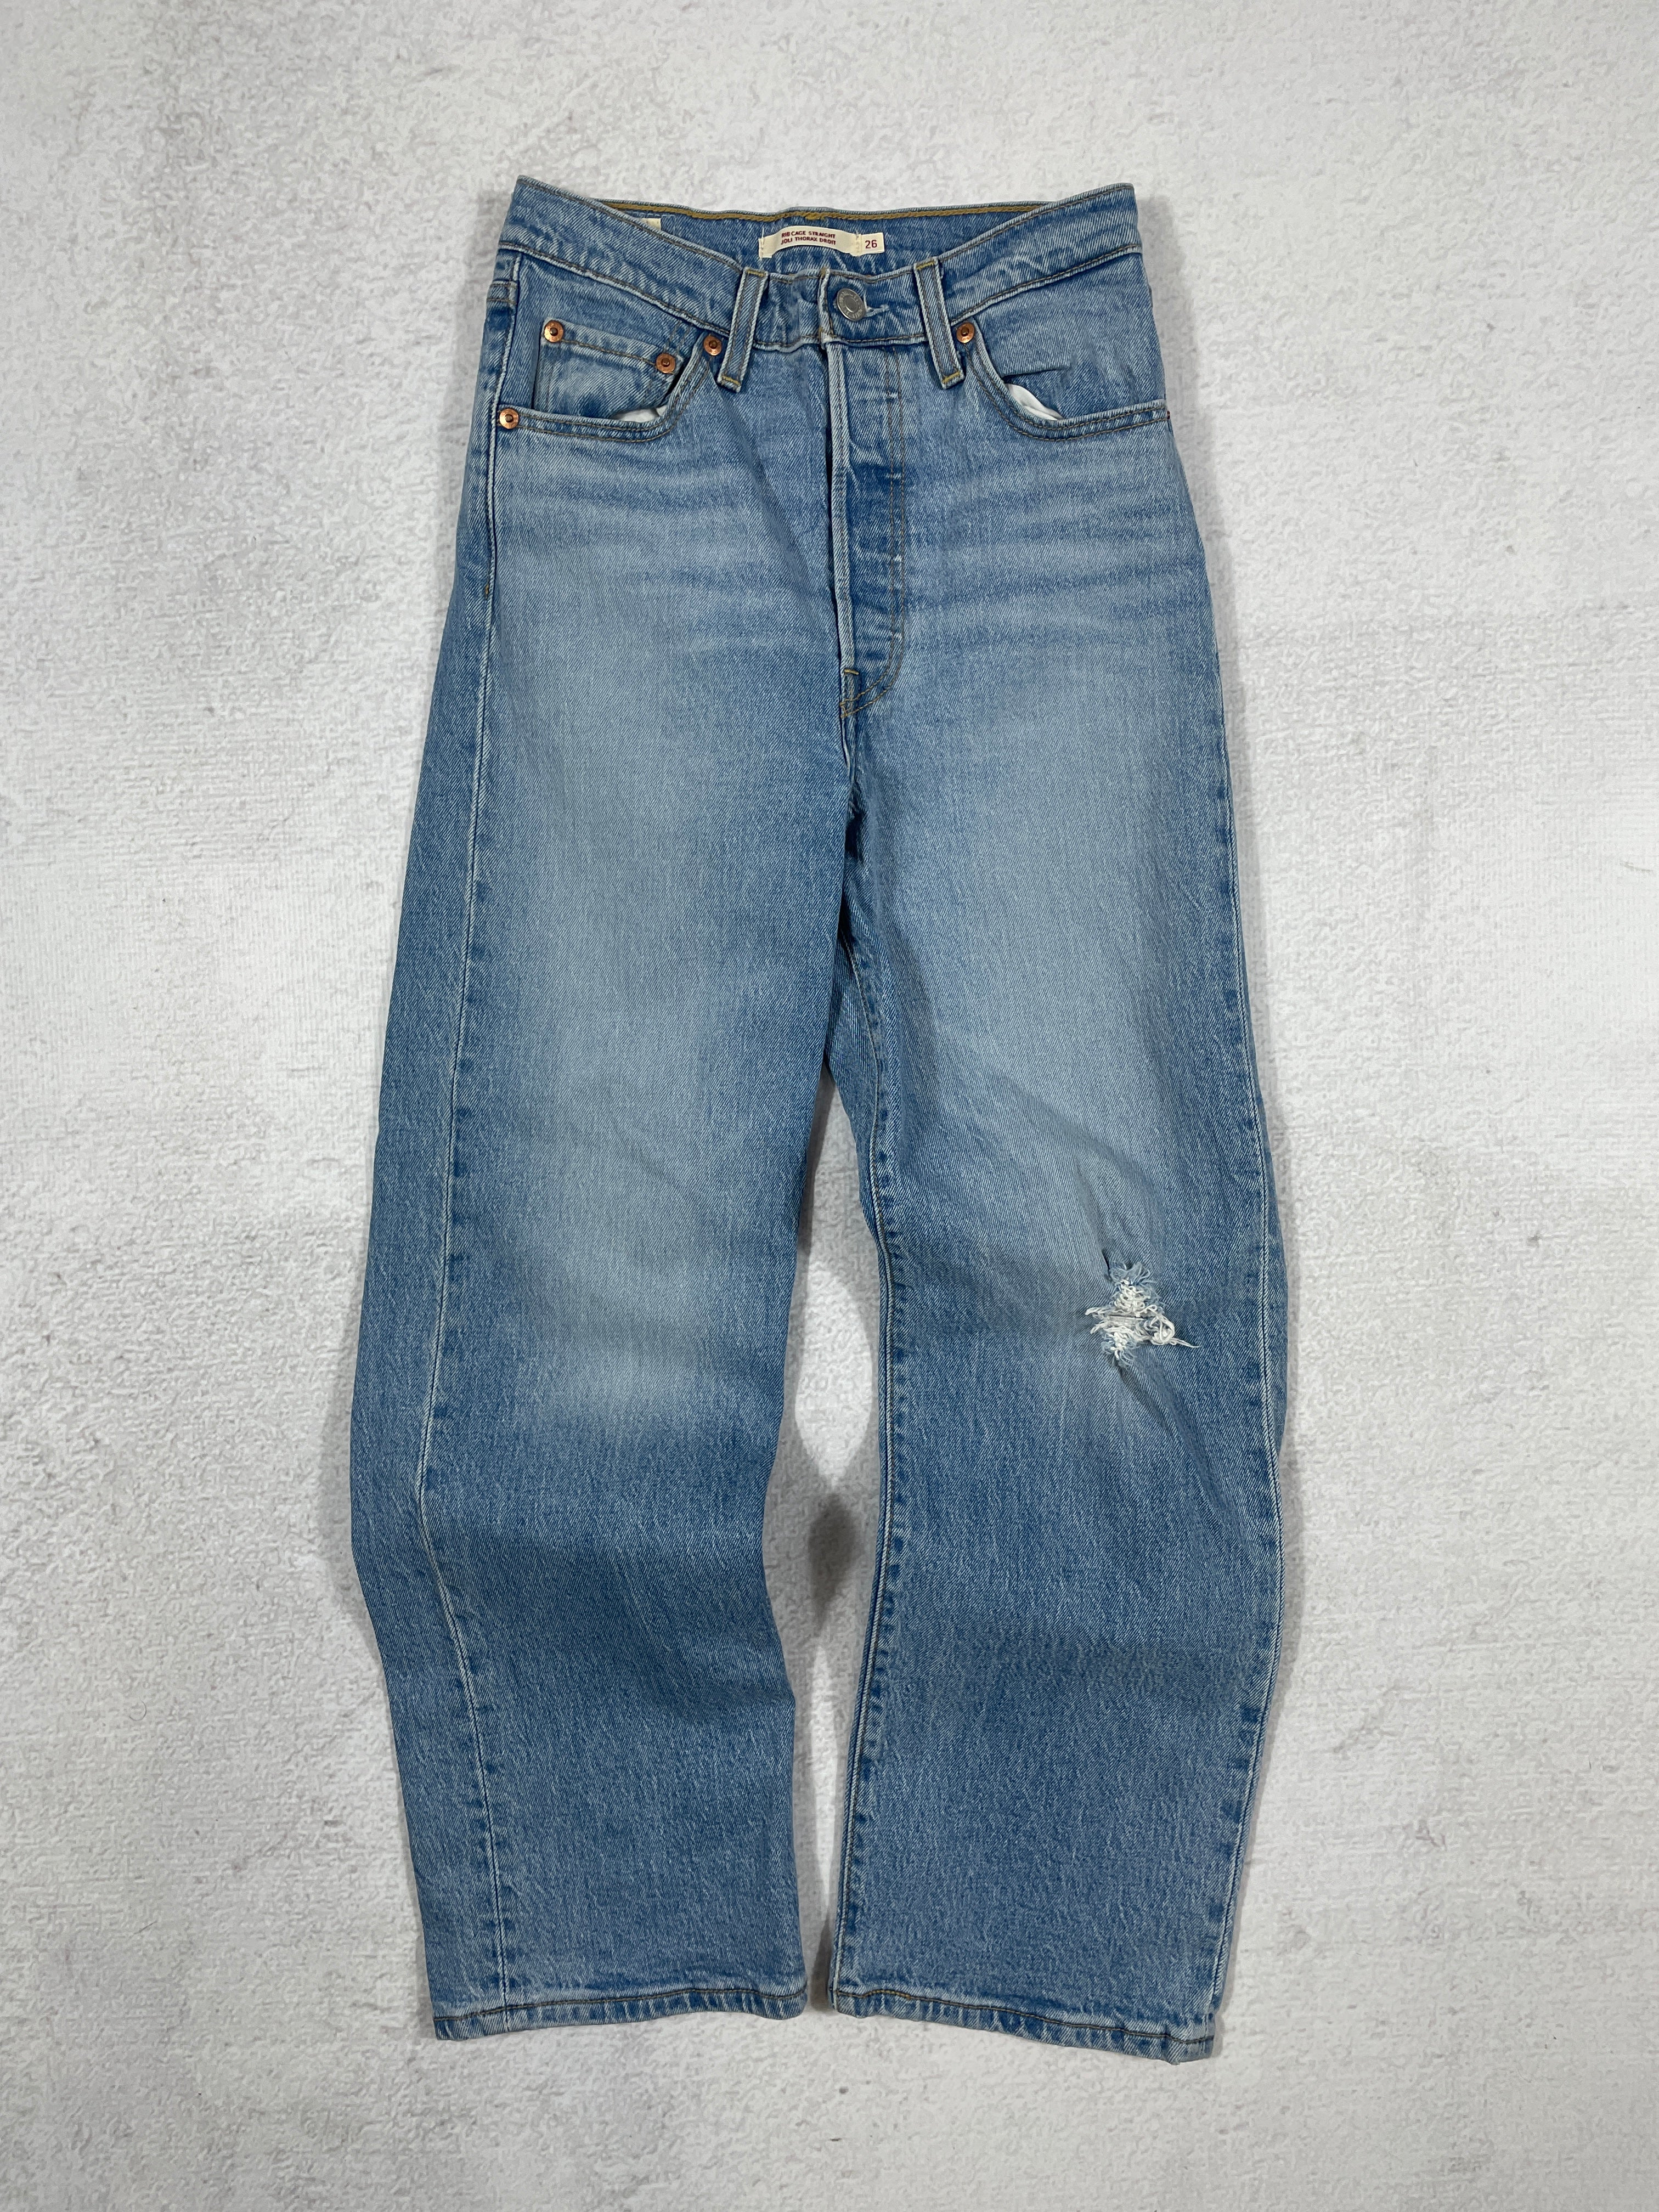 Vintage Levis Straight Jeans - Women's 26Wx27L